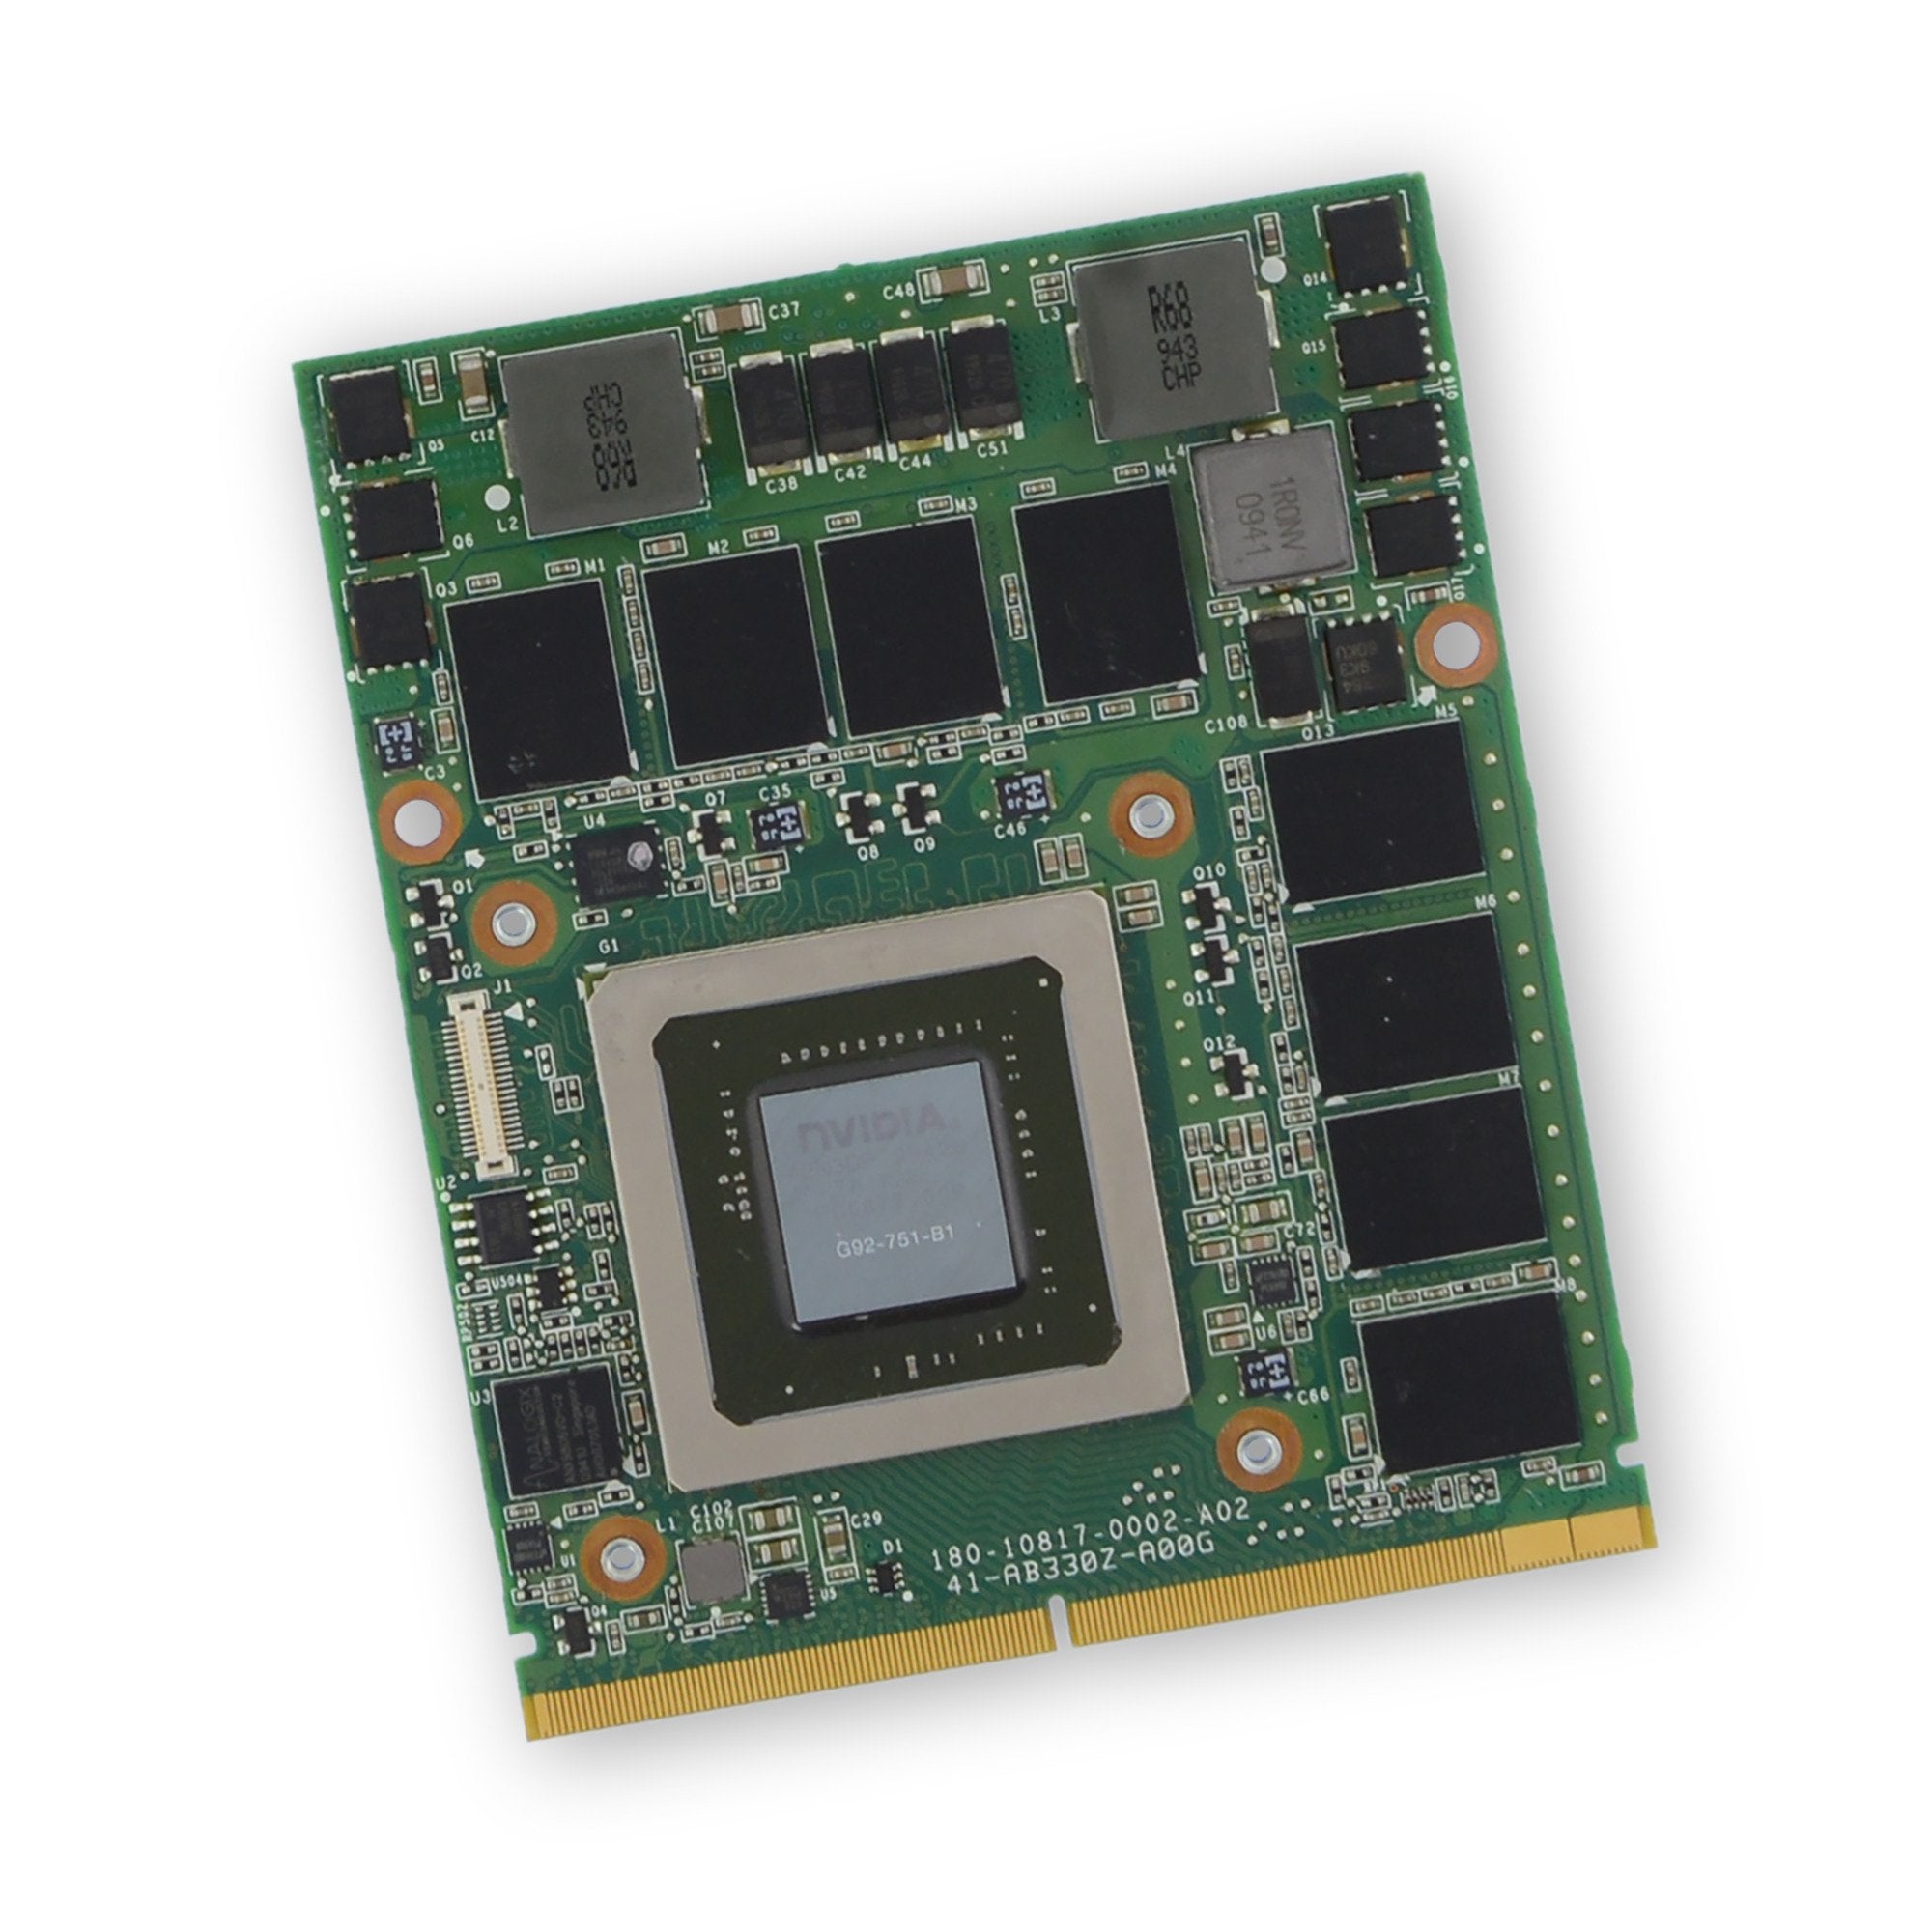 Alienware M15x (P08G) GTX 260M GPU